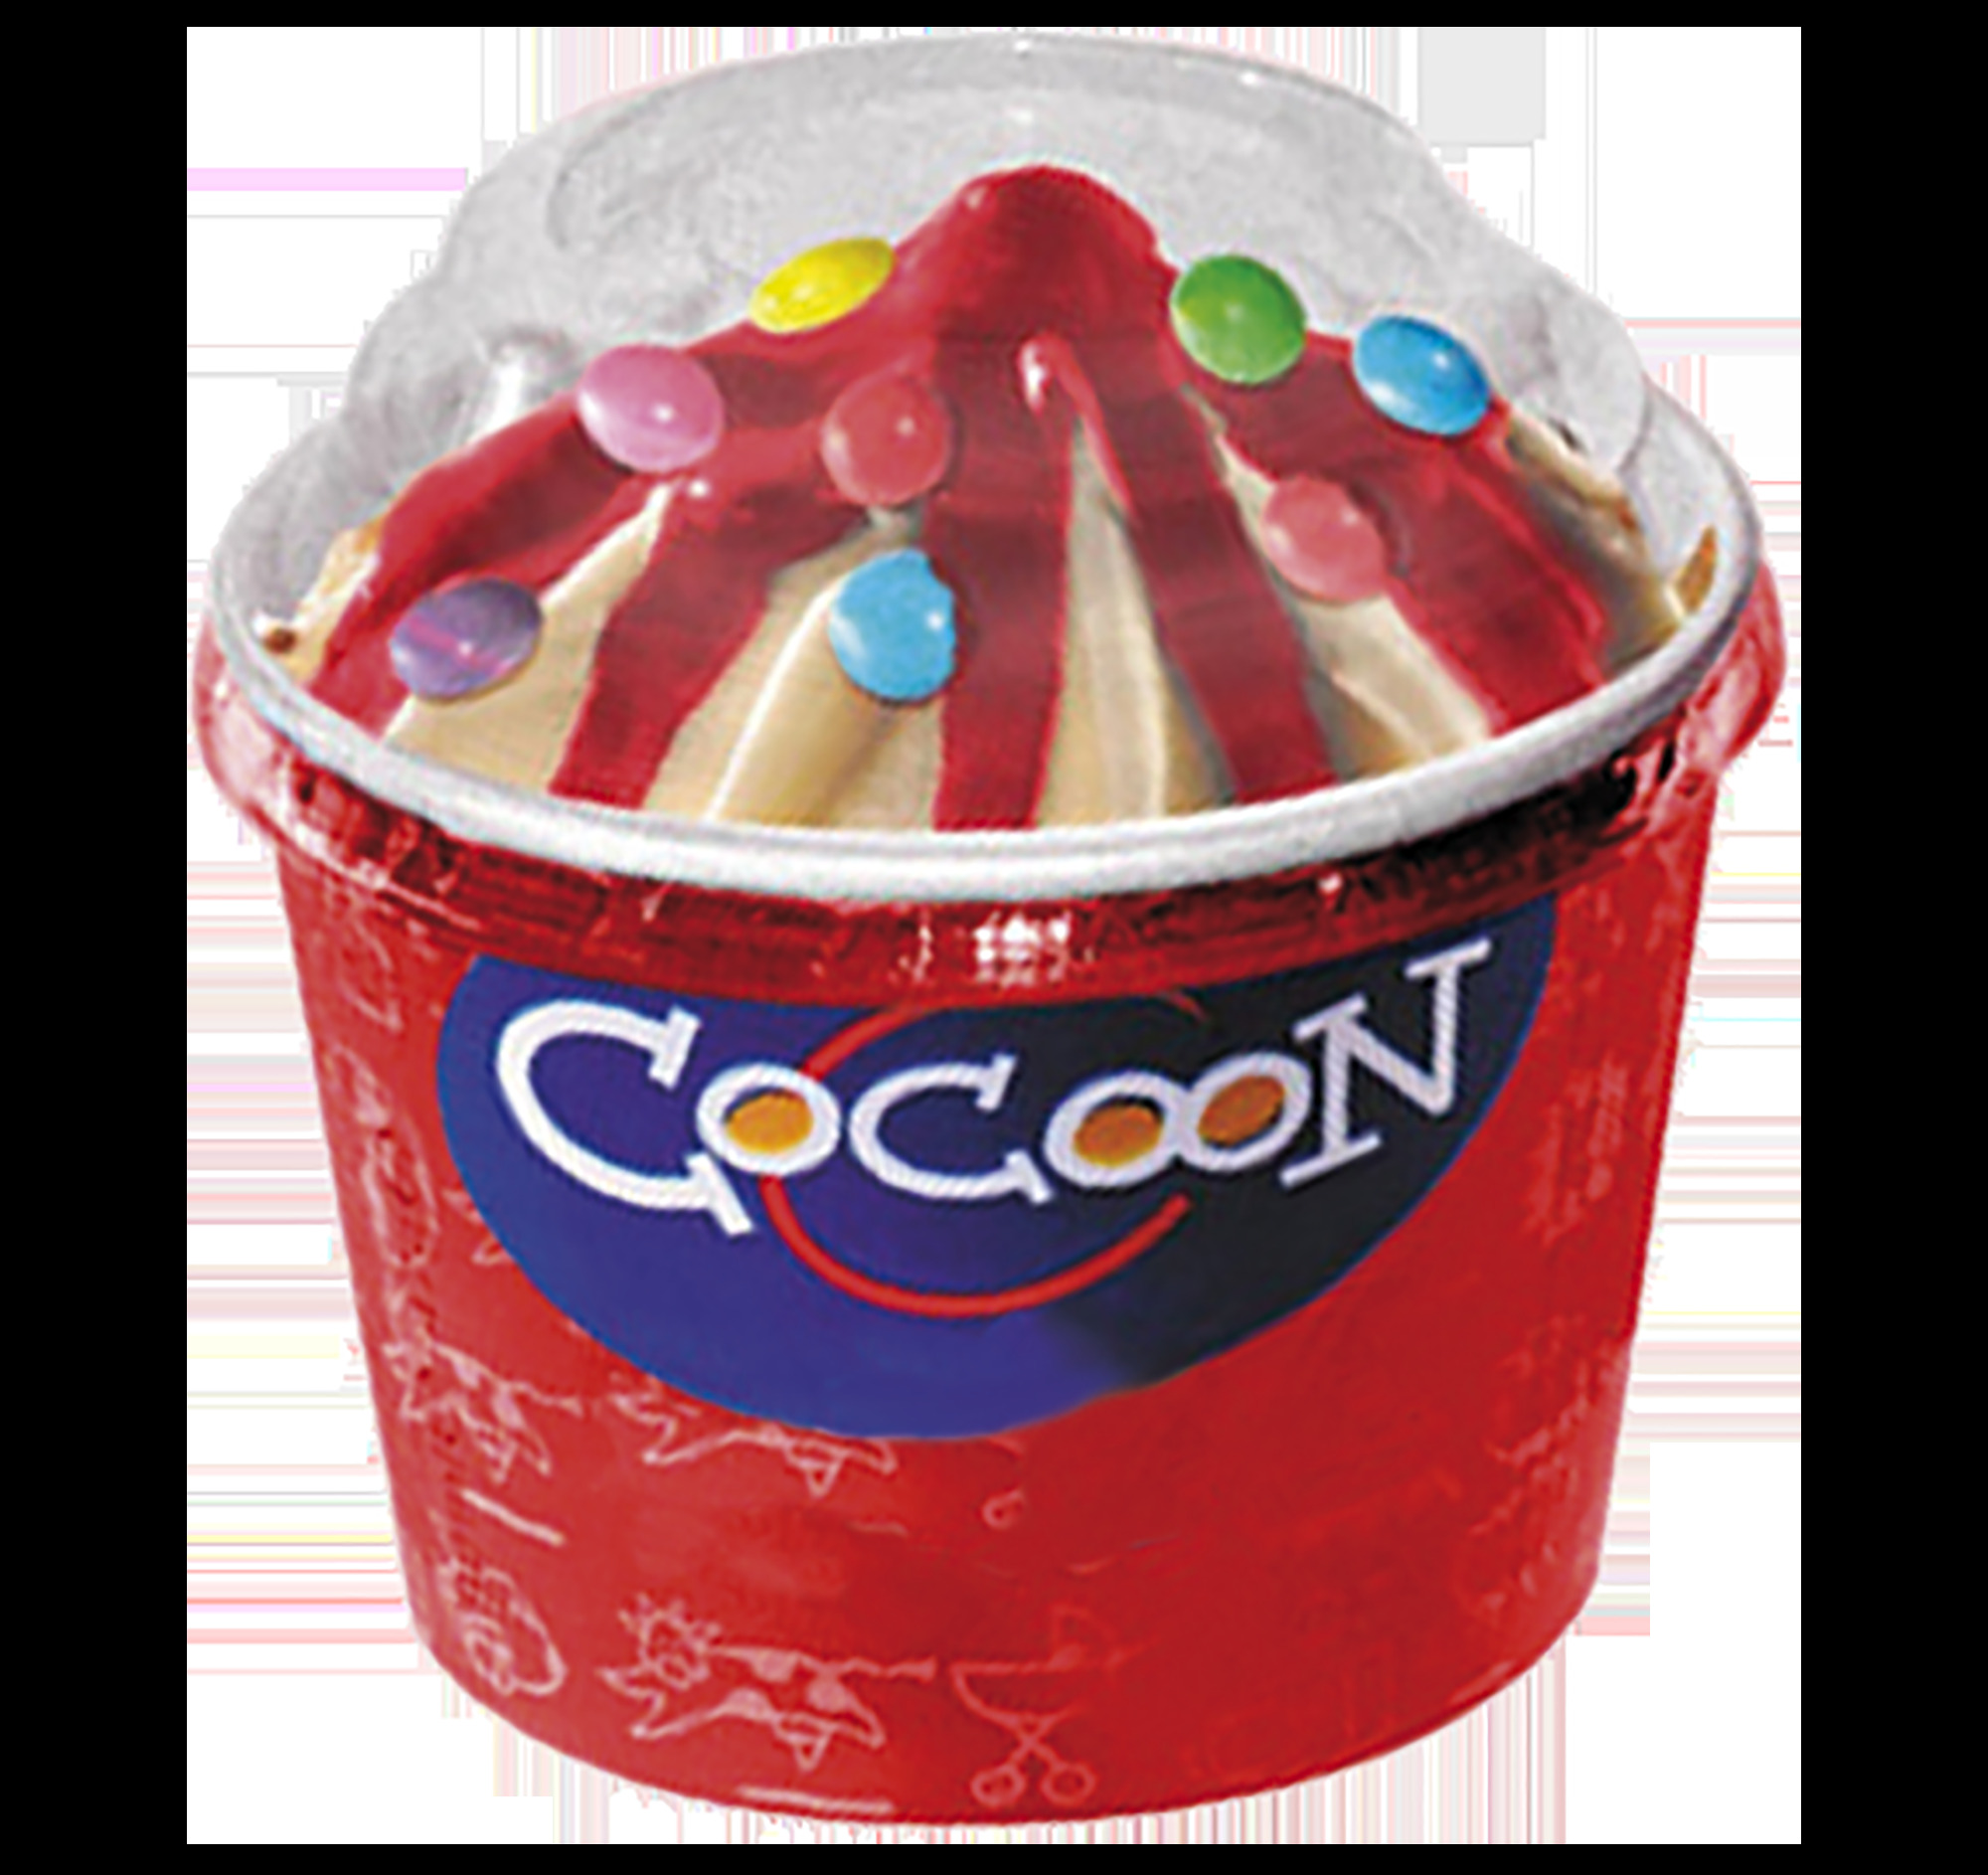 Cocoon Vanille-Erdbeer 90ml